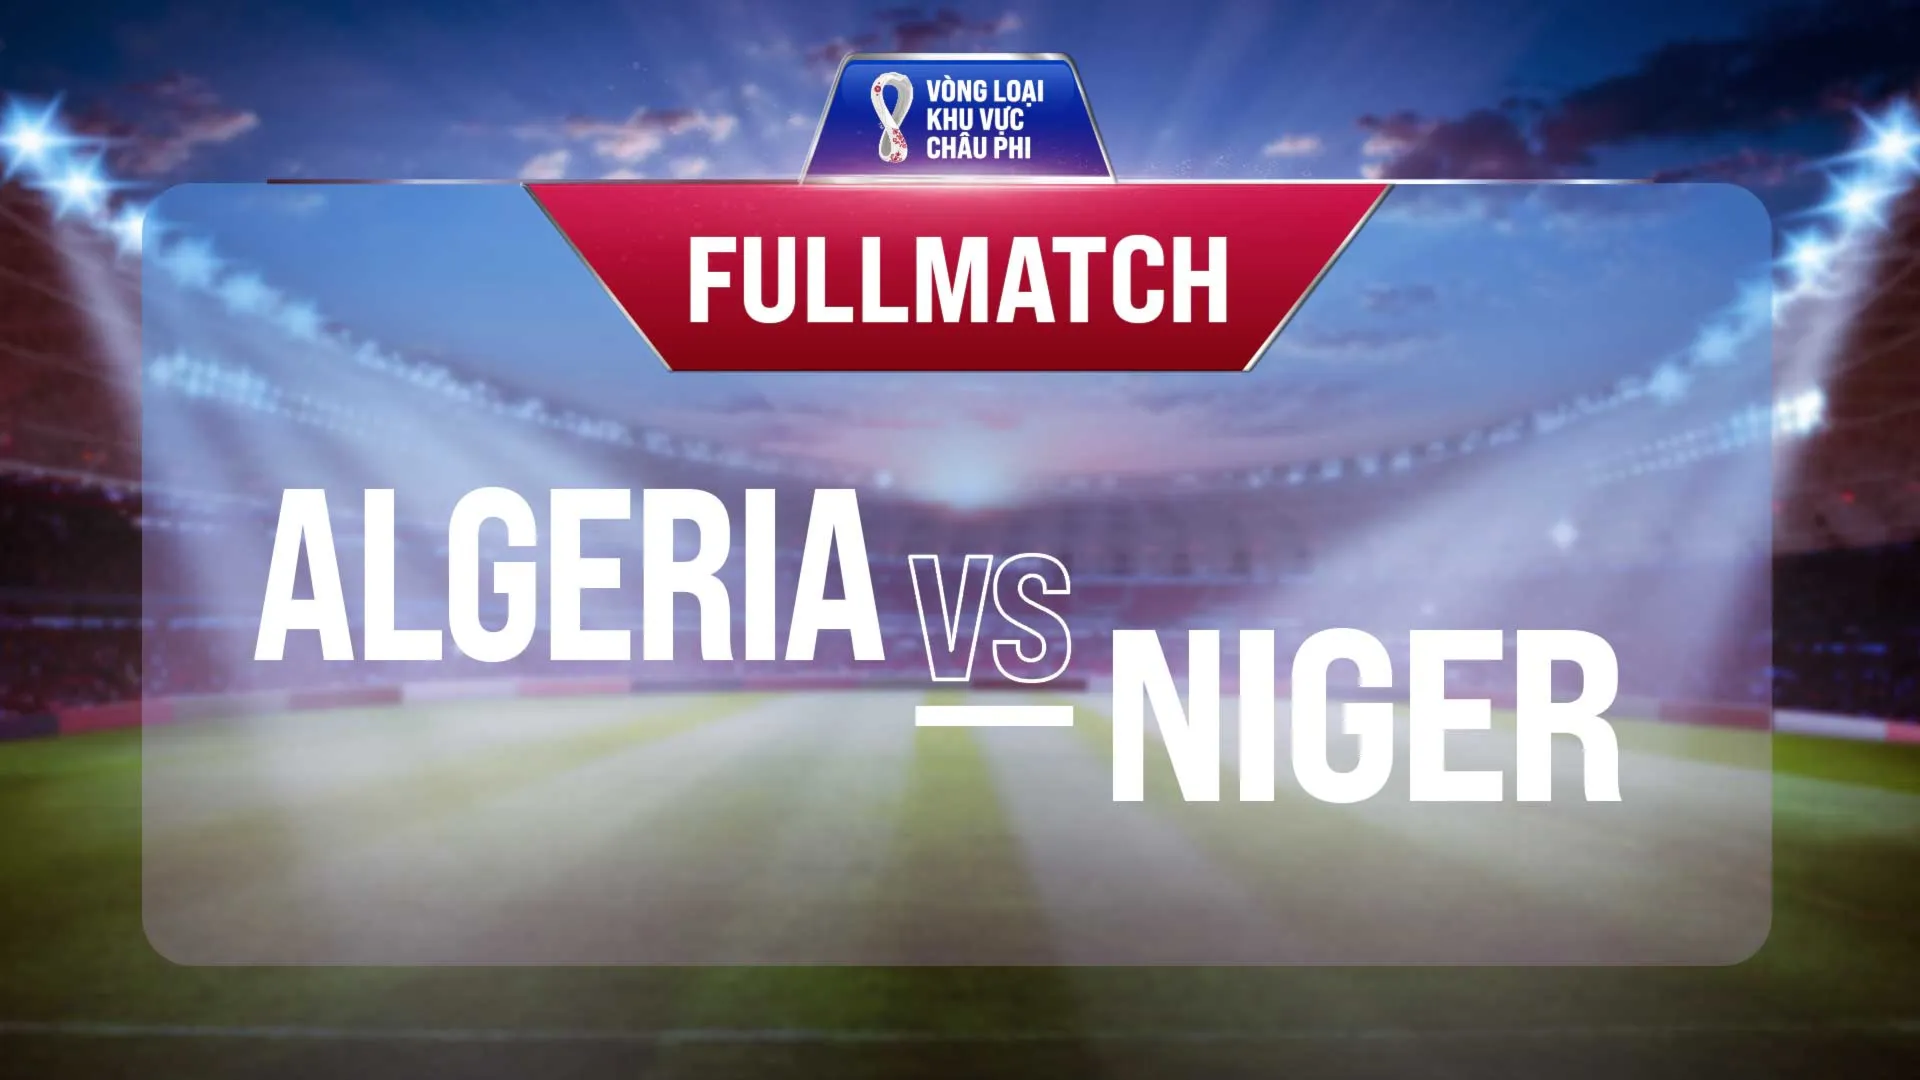 Full match Algeria vs Niger  (Lượt trận 3 Vòng Loại thứ 2 World Cup 2022 - Khu vực châu Phi)